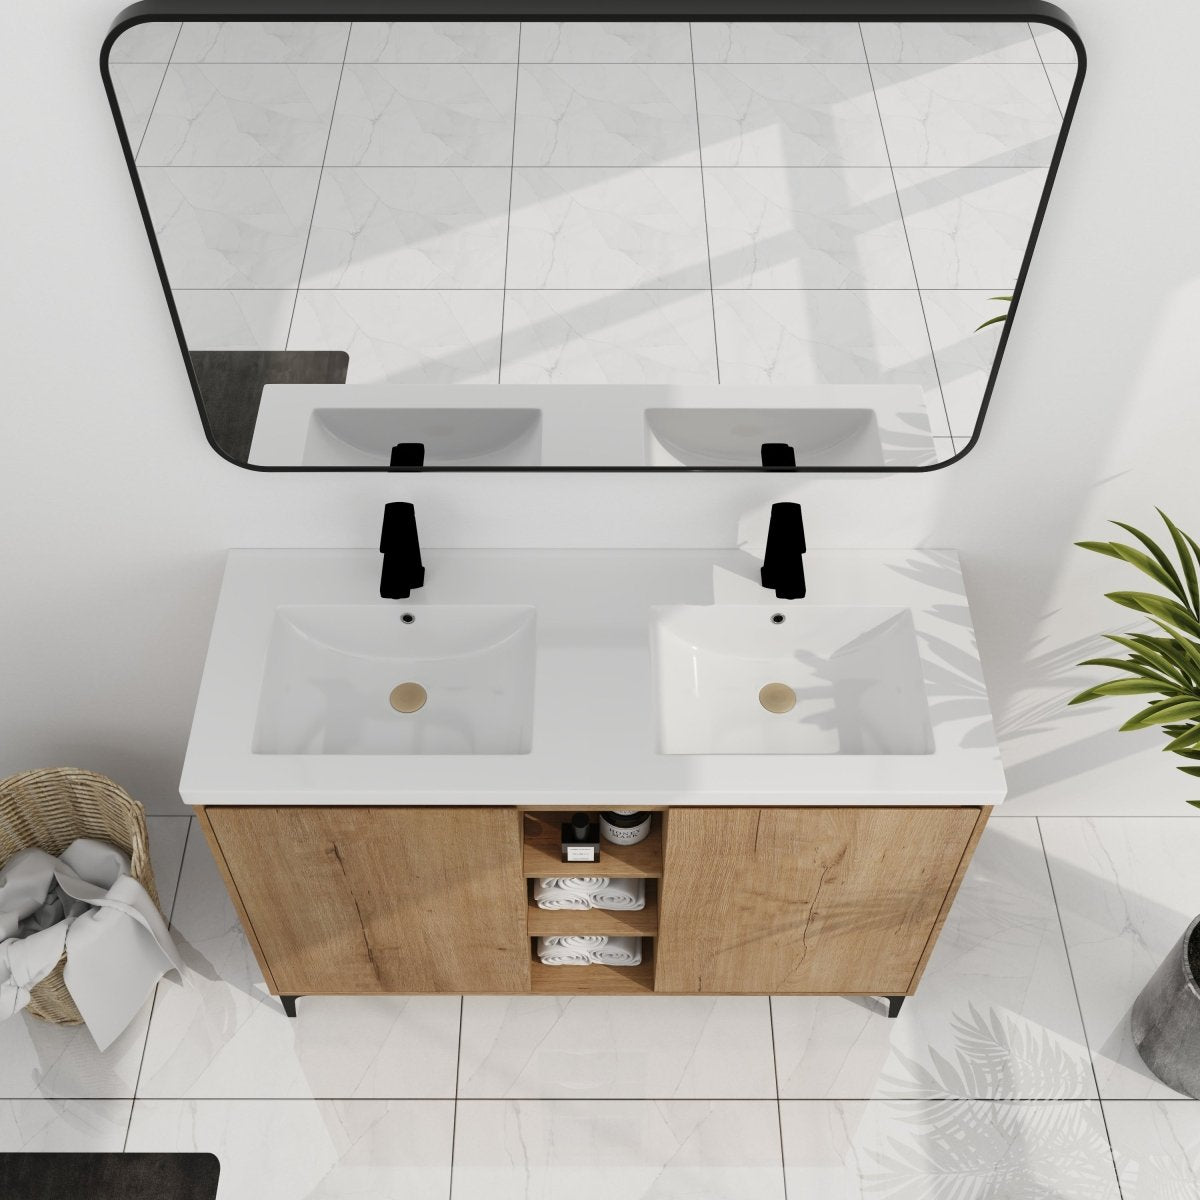 ExBrite 48" Freestanding Bathroom Vanity With Double Sink, Soft Closing Door Hinge